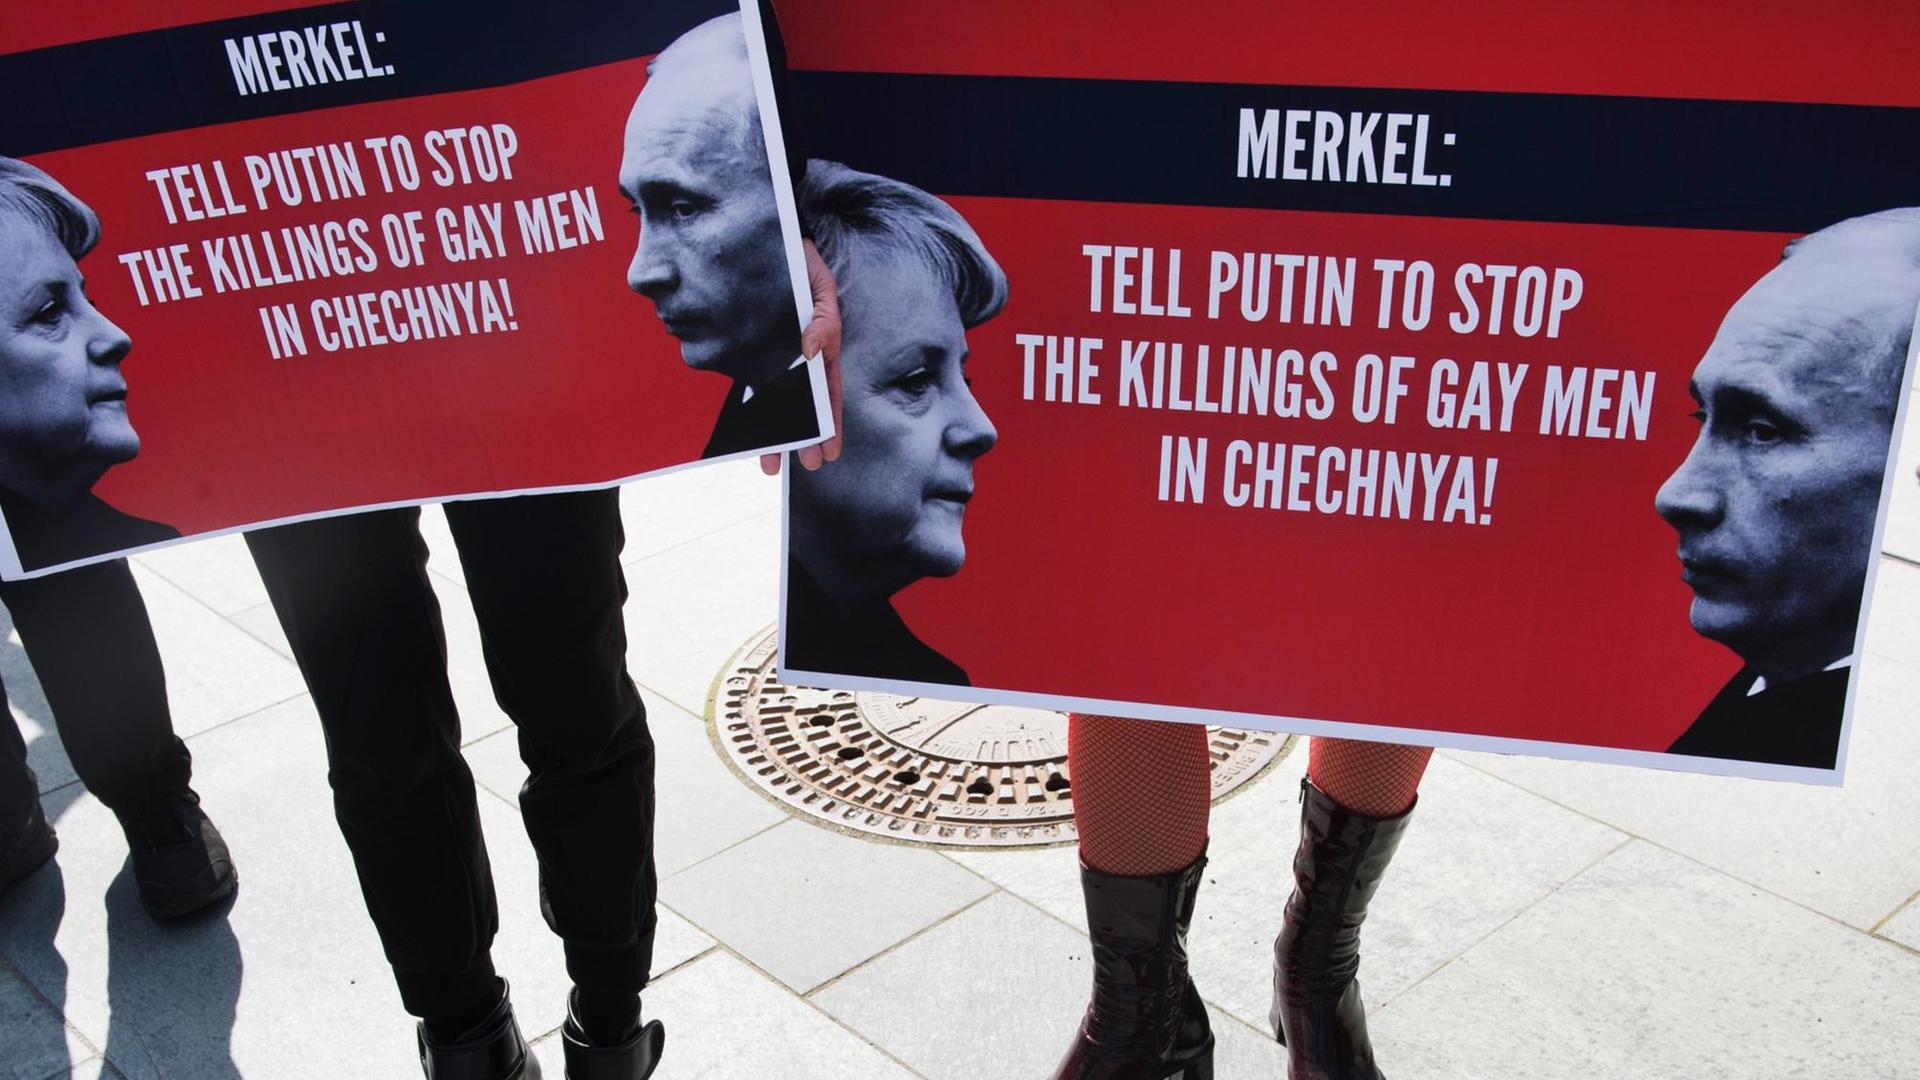 Demonstranten halten am 30.04.2017 in Berlin beim Start einer dreitägigen Mahnwache zum Schutz von Schwulen in Tschetschenien Plakate mit der Aufschrift "Merkel: Tell Putin to Stop the Killings of Gay Men in Chechnya" in den Händen.